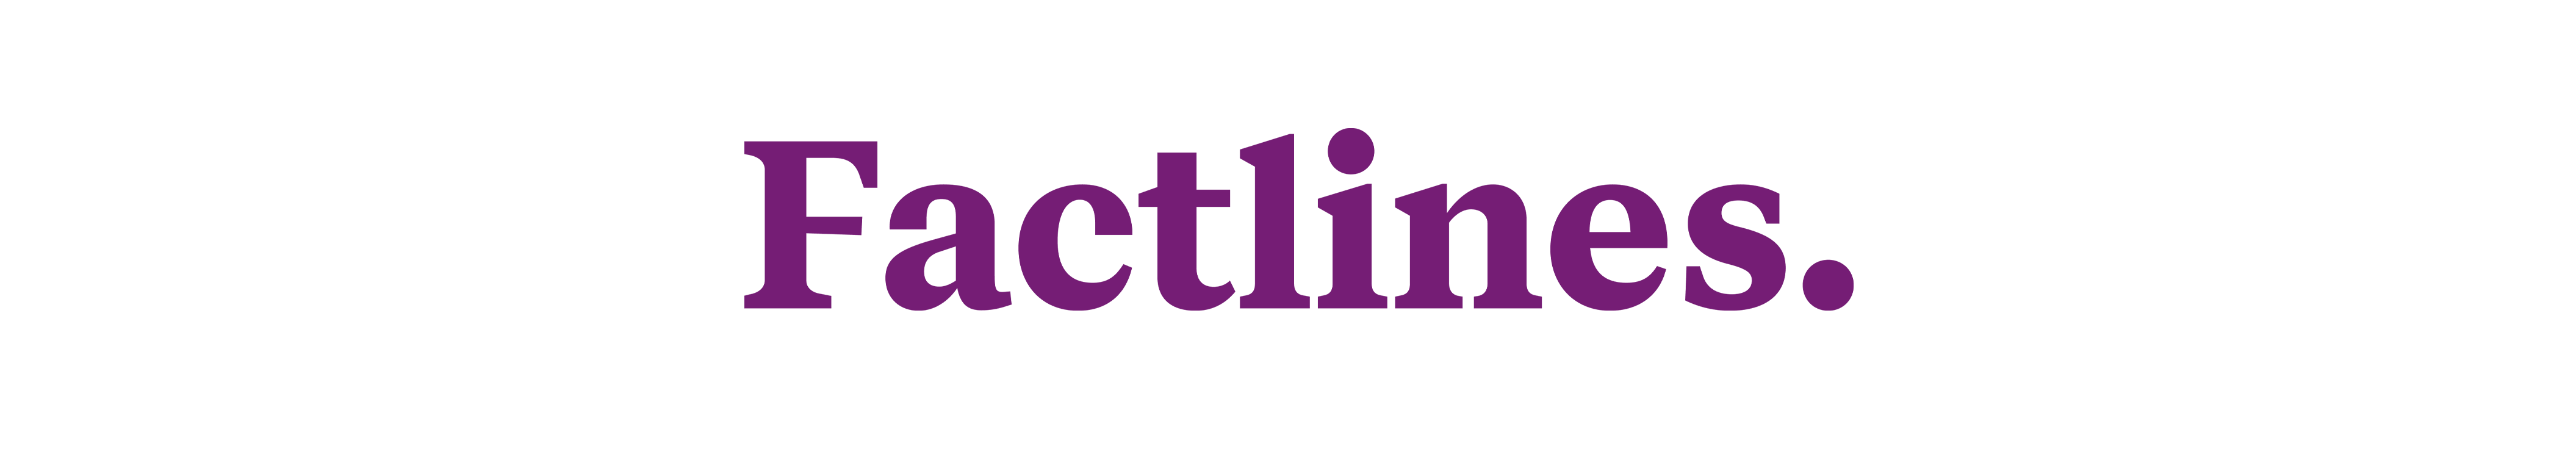 Factlines_logo